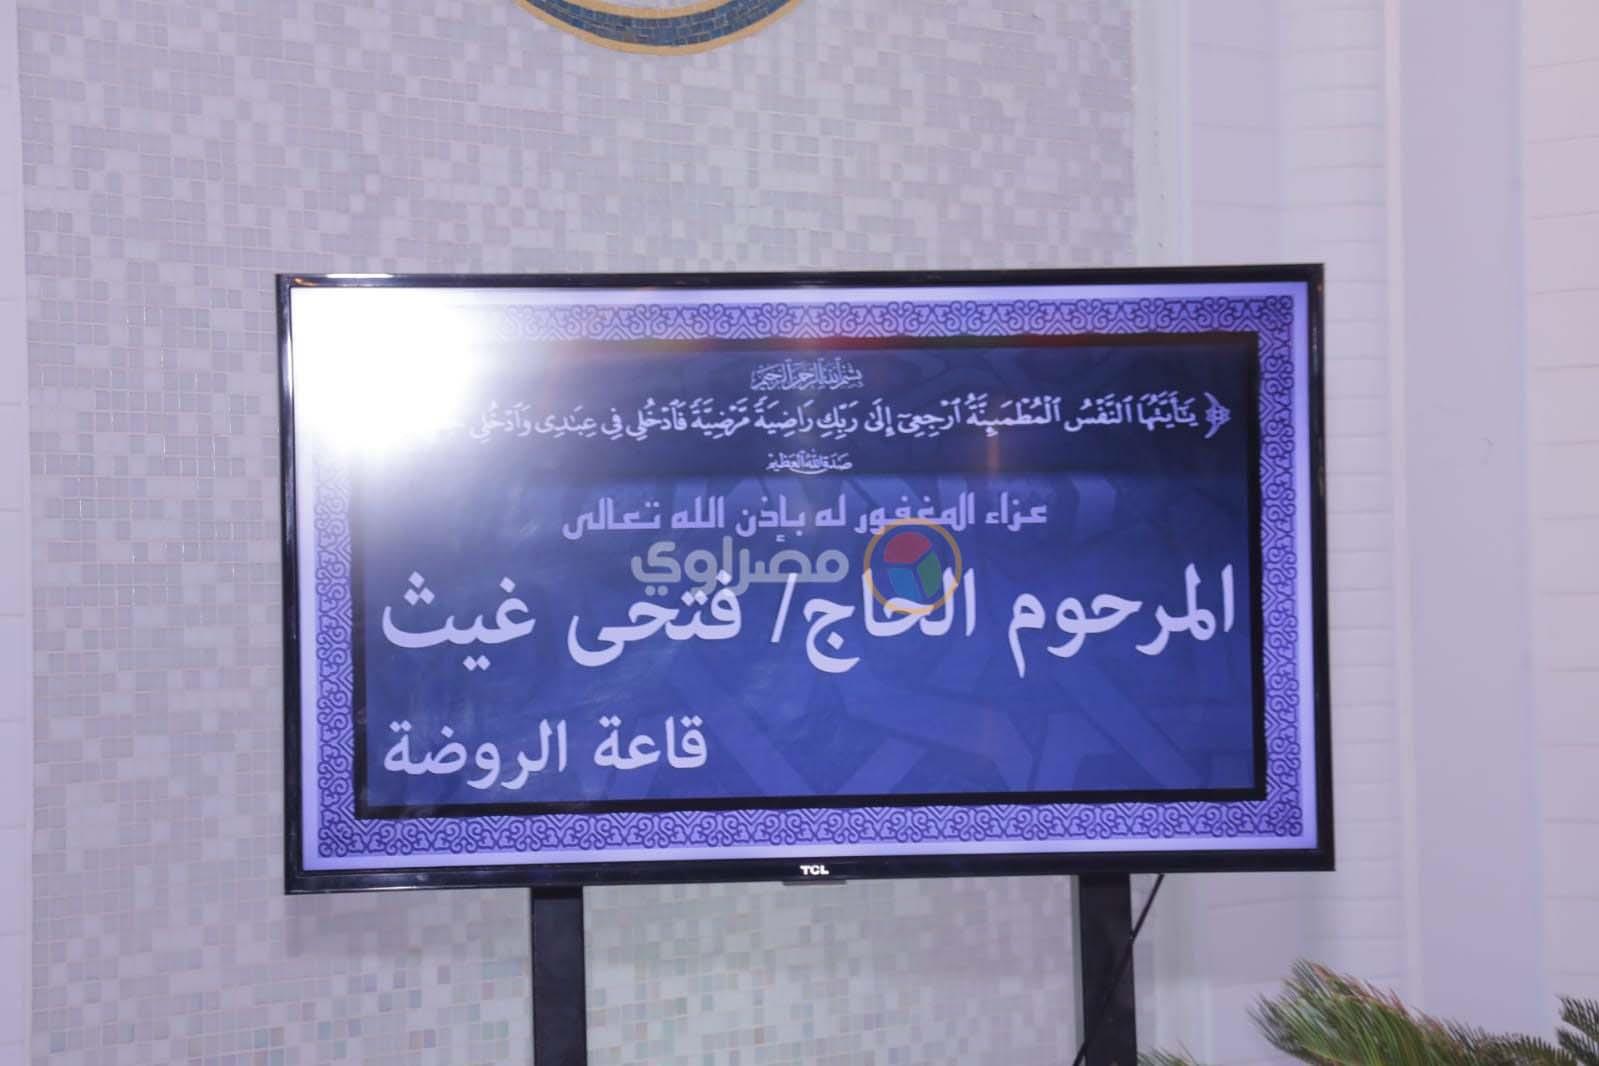 مجدي الجلاد يستقبل المعزين في وفاة حماه بمسجد الشرطة بالتجمع الخامس (1)